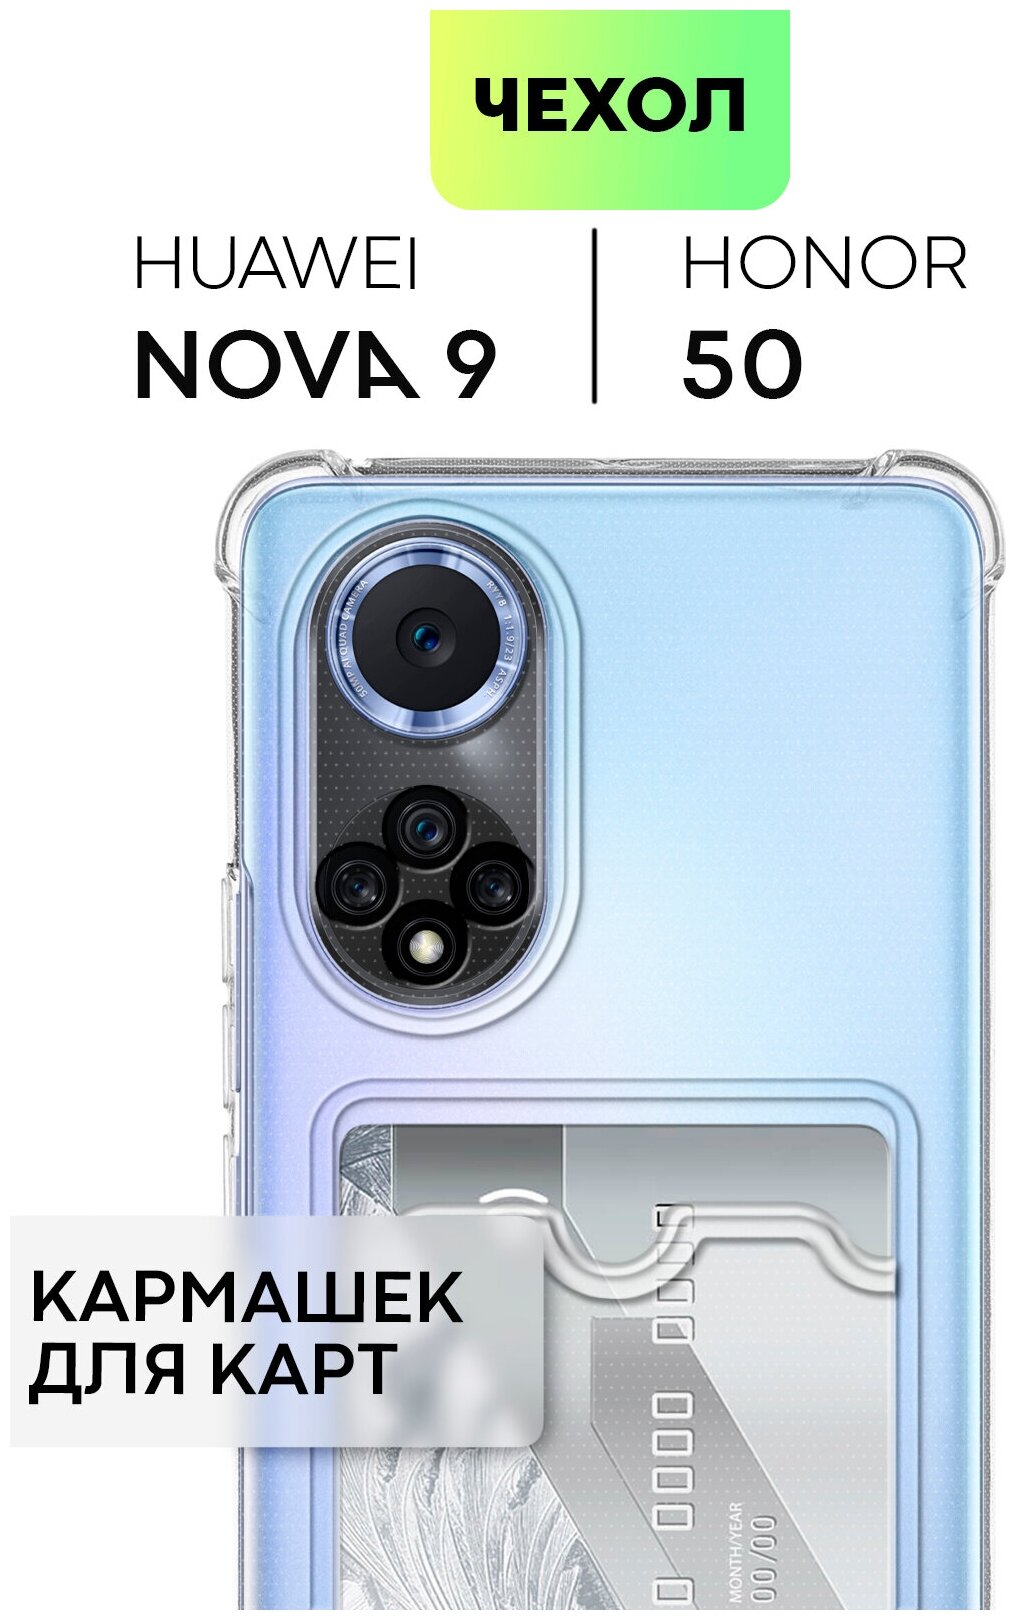 Противоударный чехол с кармашком для Honor 50, Huawei Nova 9 (Хонор 50 и Хуавей Нова 9) усиленный, защита камеры, для карт, прозрачный, BROSCORP